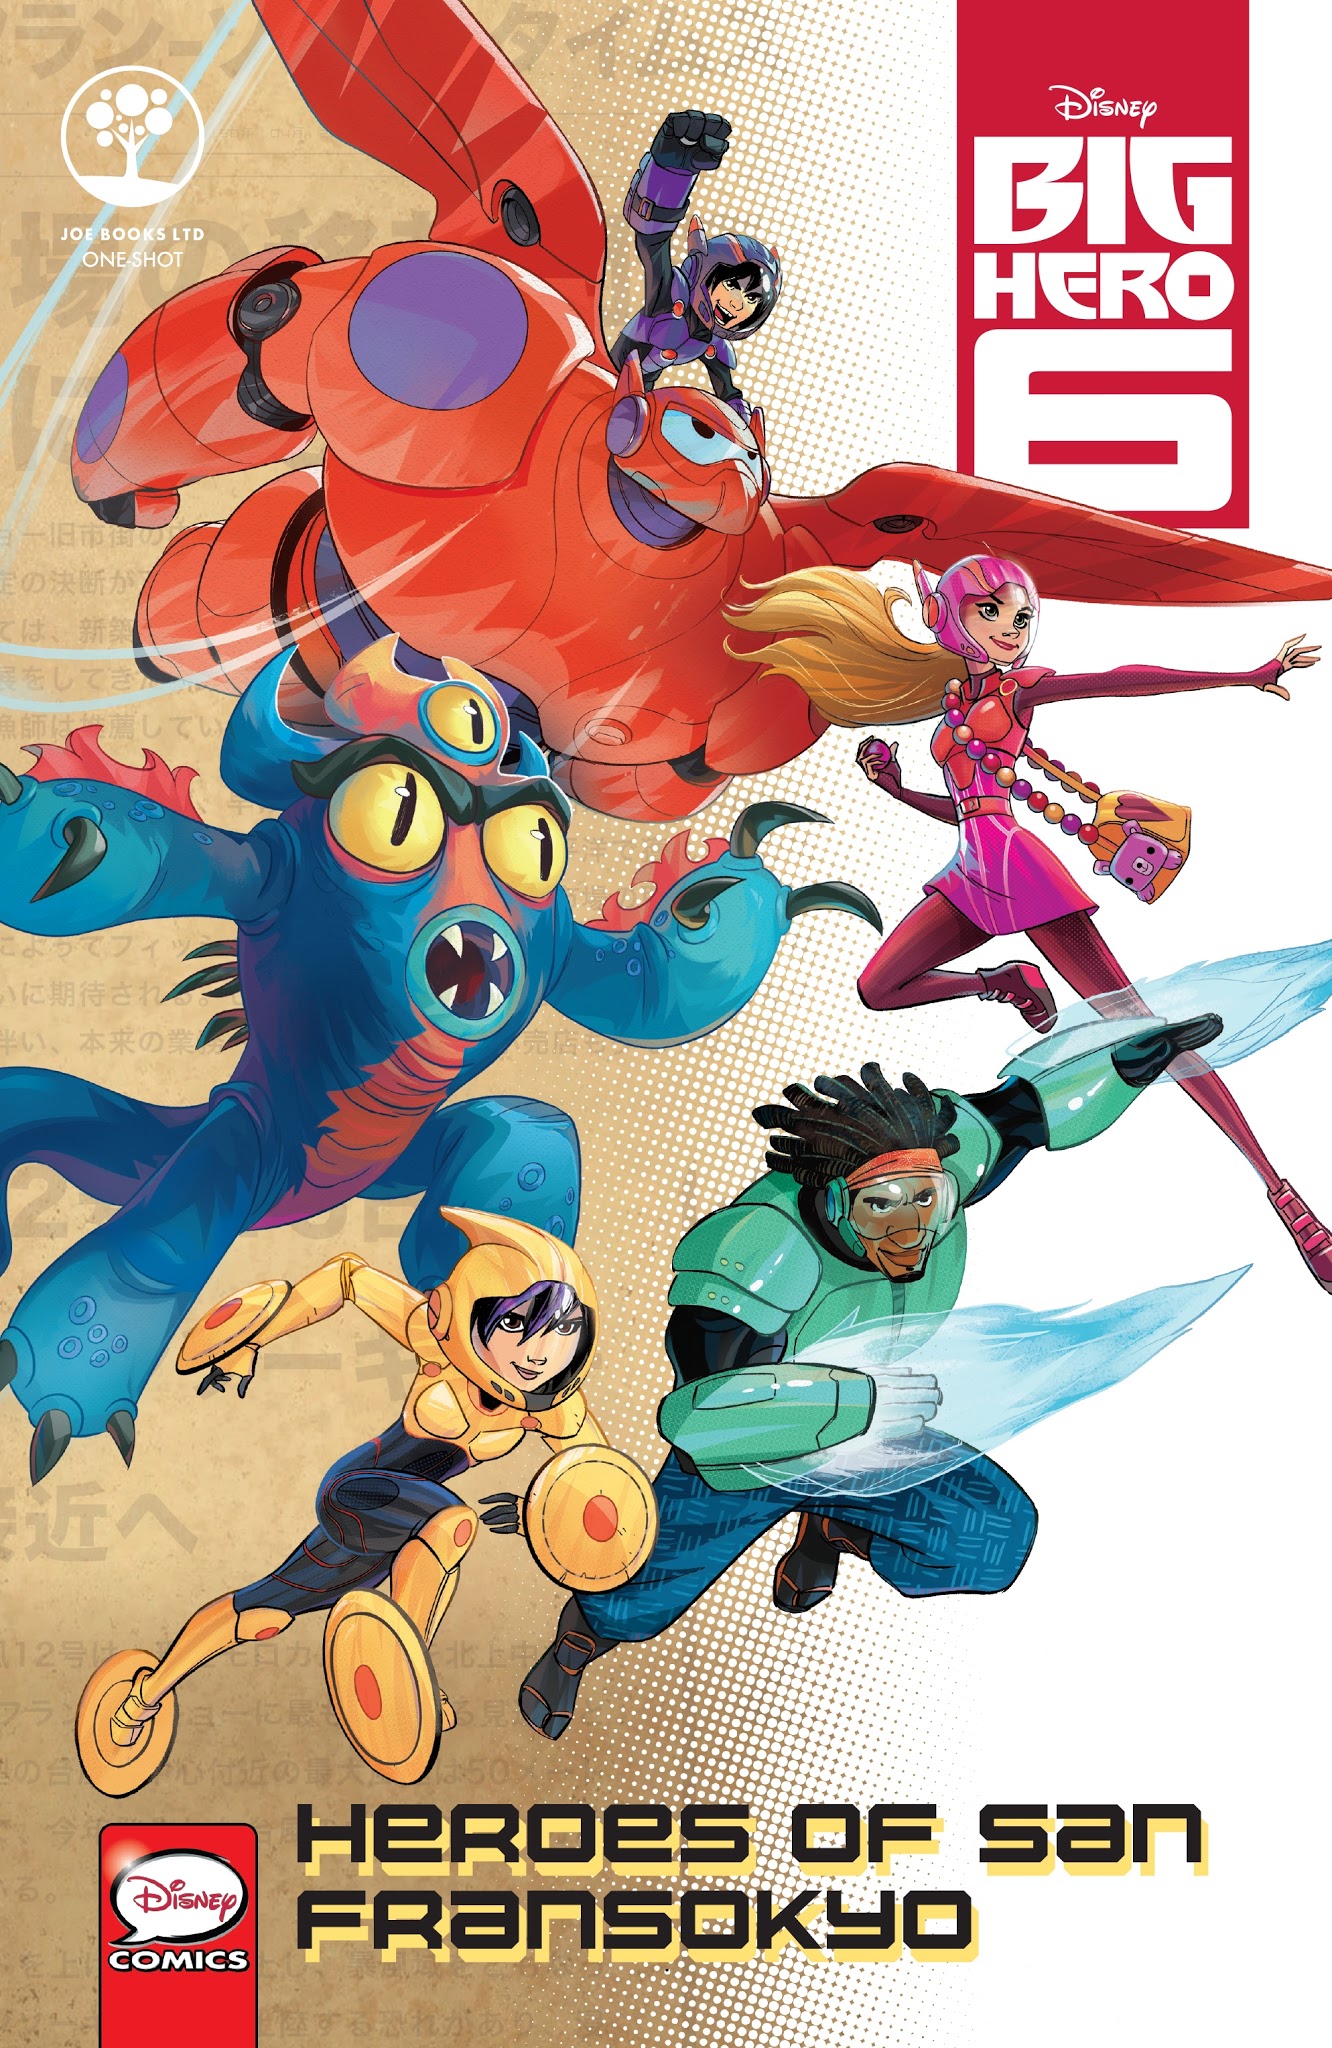 Read online Disney Big Hero 6: Heroes of San Fransokyo comic -  Issue # Full - 1